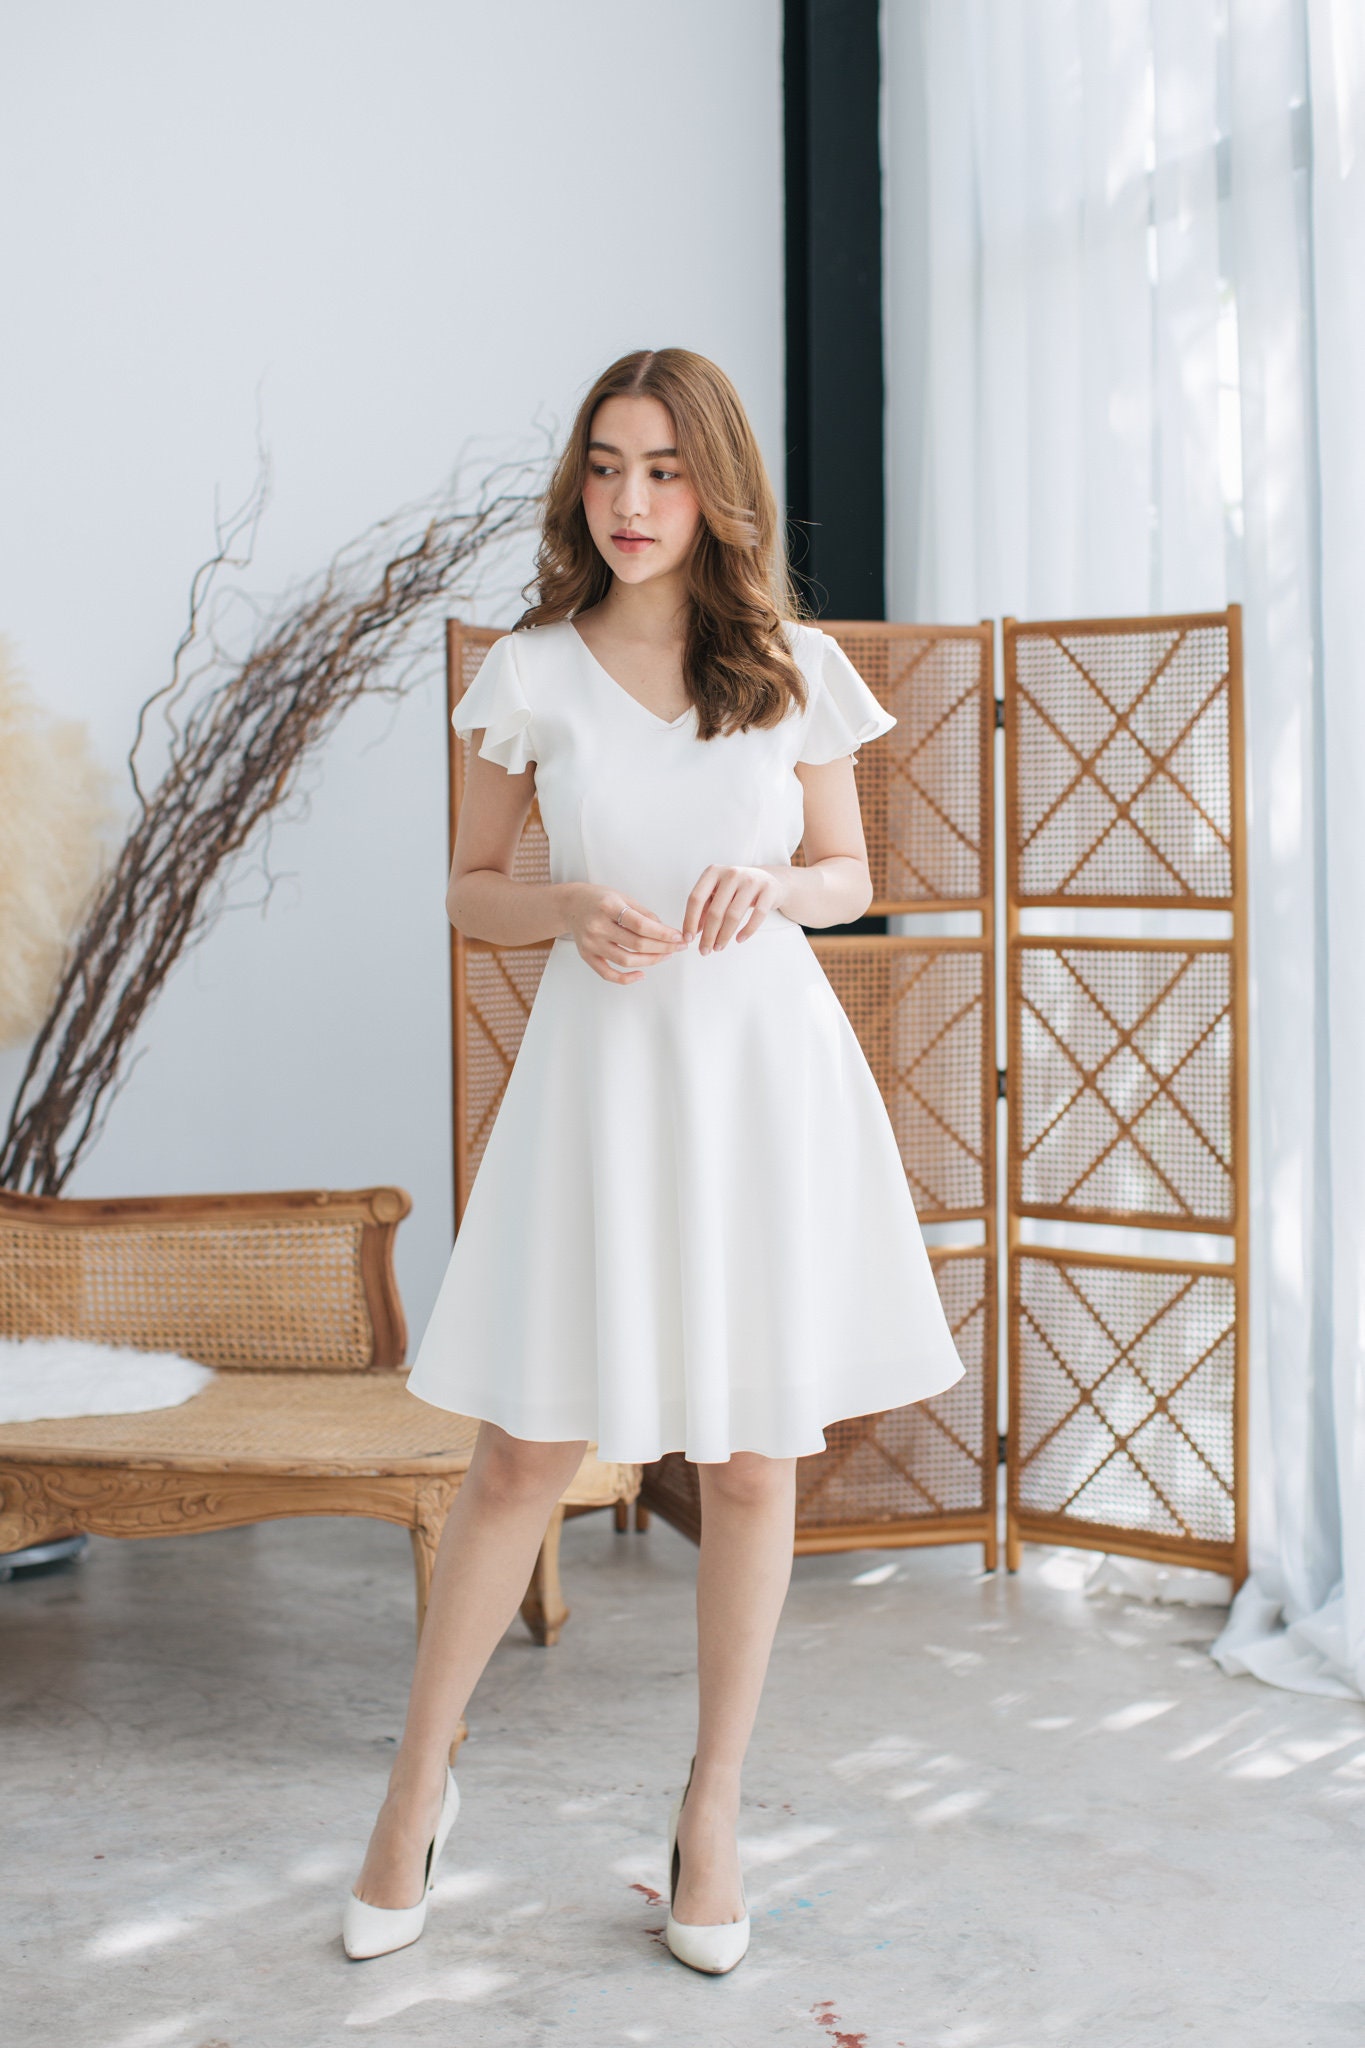 White Party Dress Ruffle Baptist Sleeve Swing Skirt Fit & Flare White Sundress Vintage Inspired Prom Summer -Alita